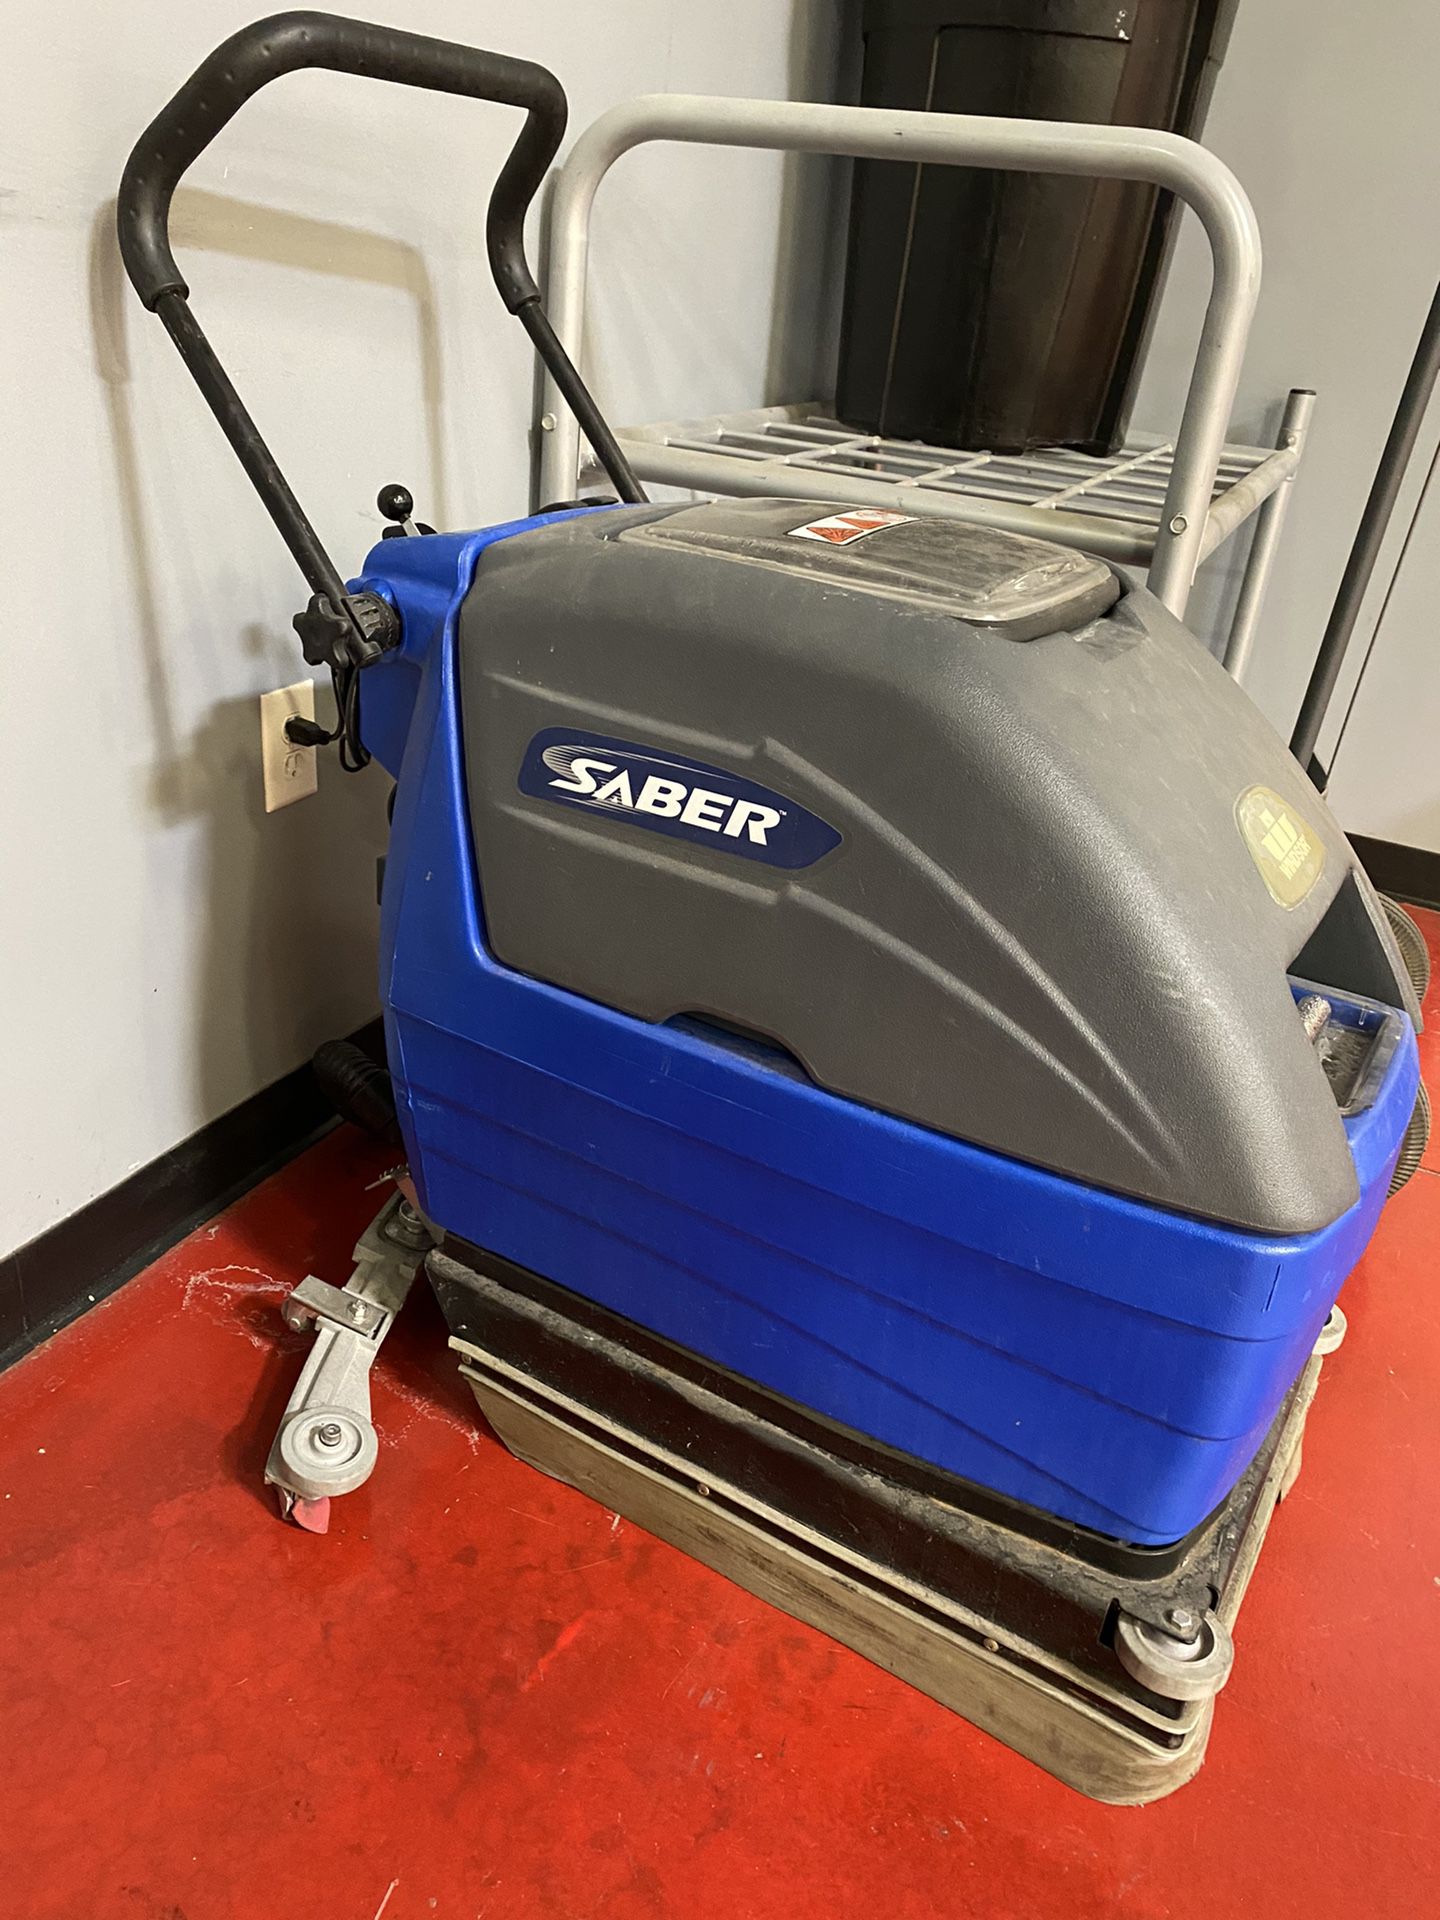 Saber floor scrubber machine